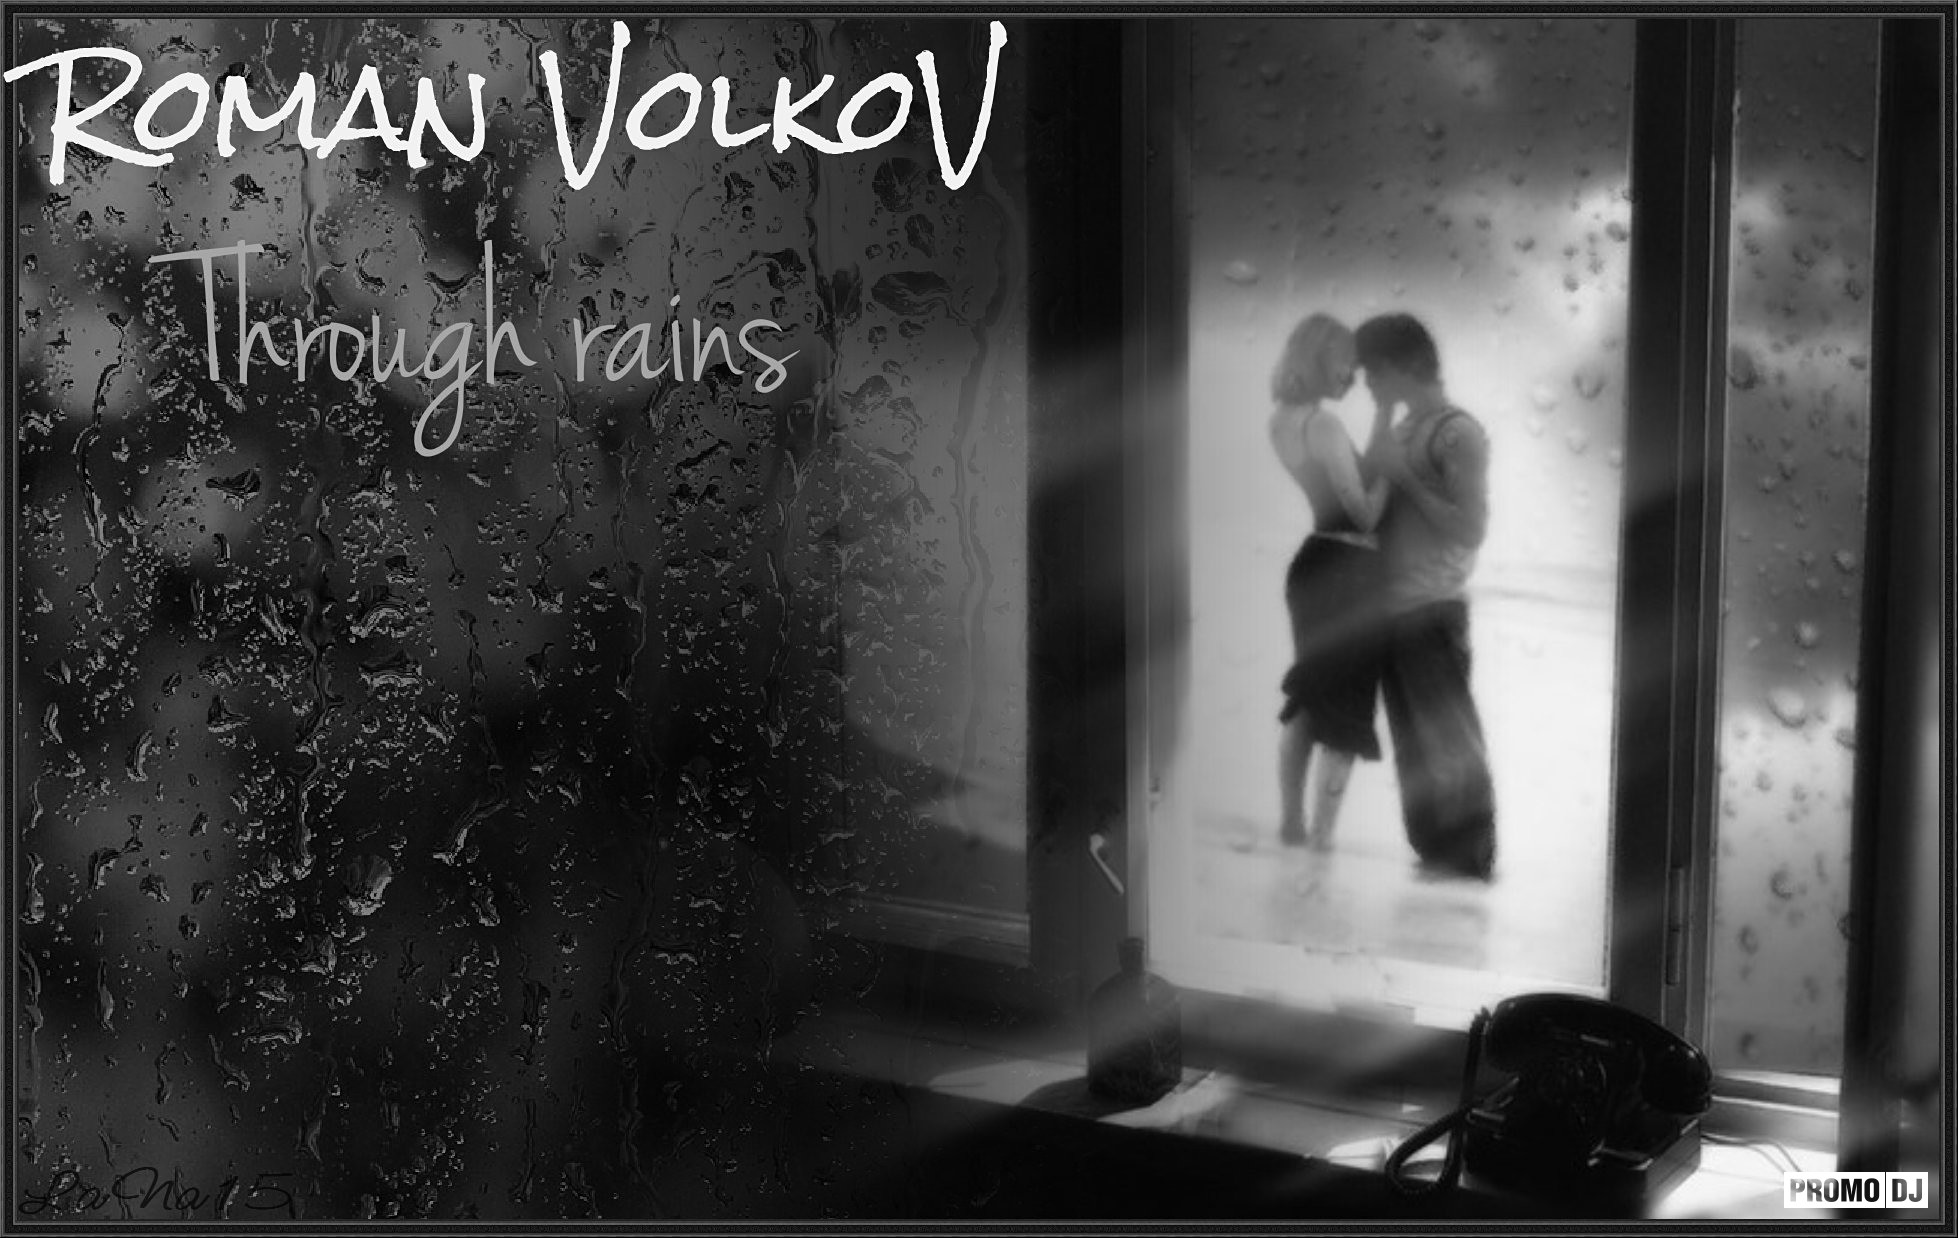 Она душе дожди. Влюбленные у окна. Парень и девушка у окна дождь. Печаль расставания. Разлука печаль.